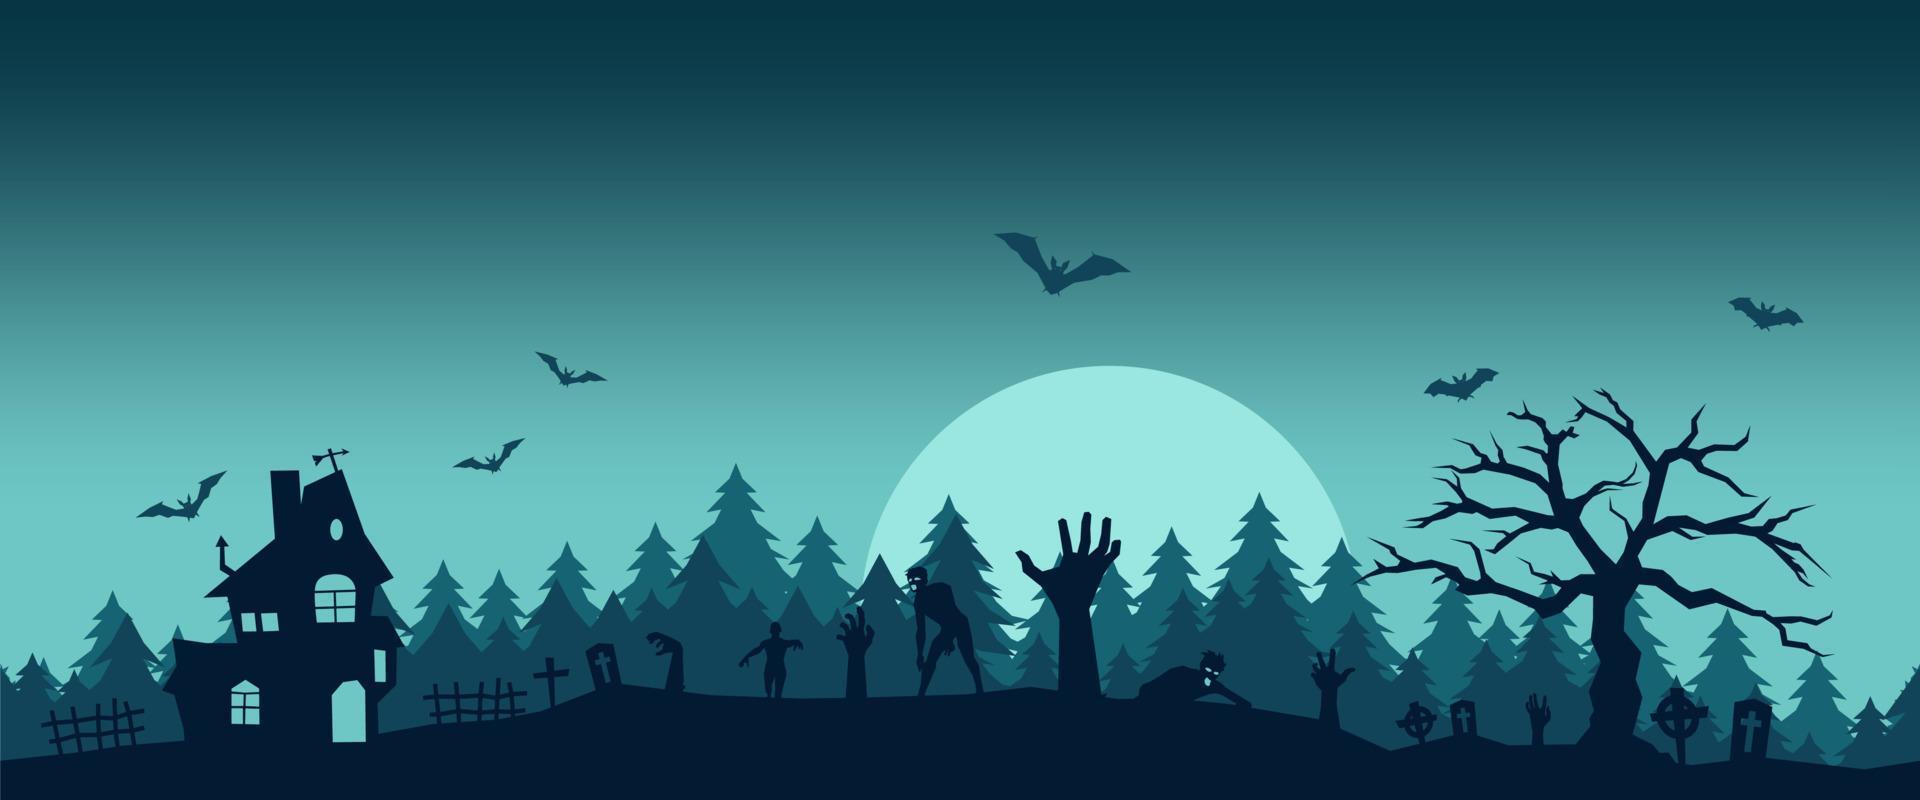 kakelbar färgglad halloween bakgrund tecknad scen vektor